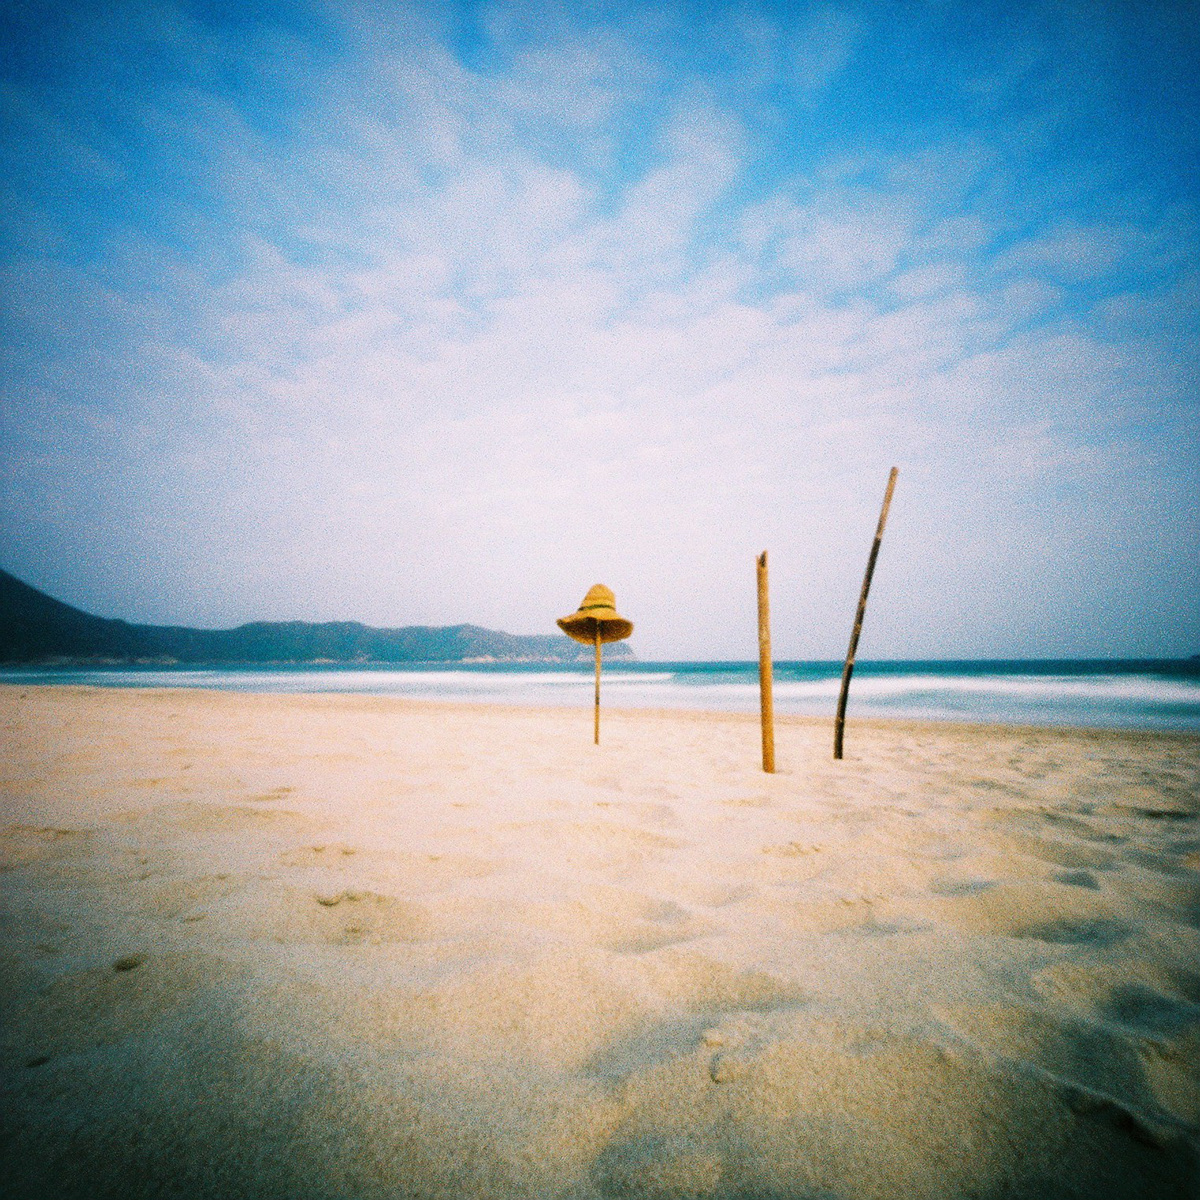 Travel Hong Kong beach sea Ocean sand relax trip